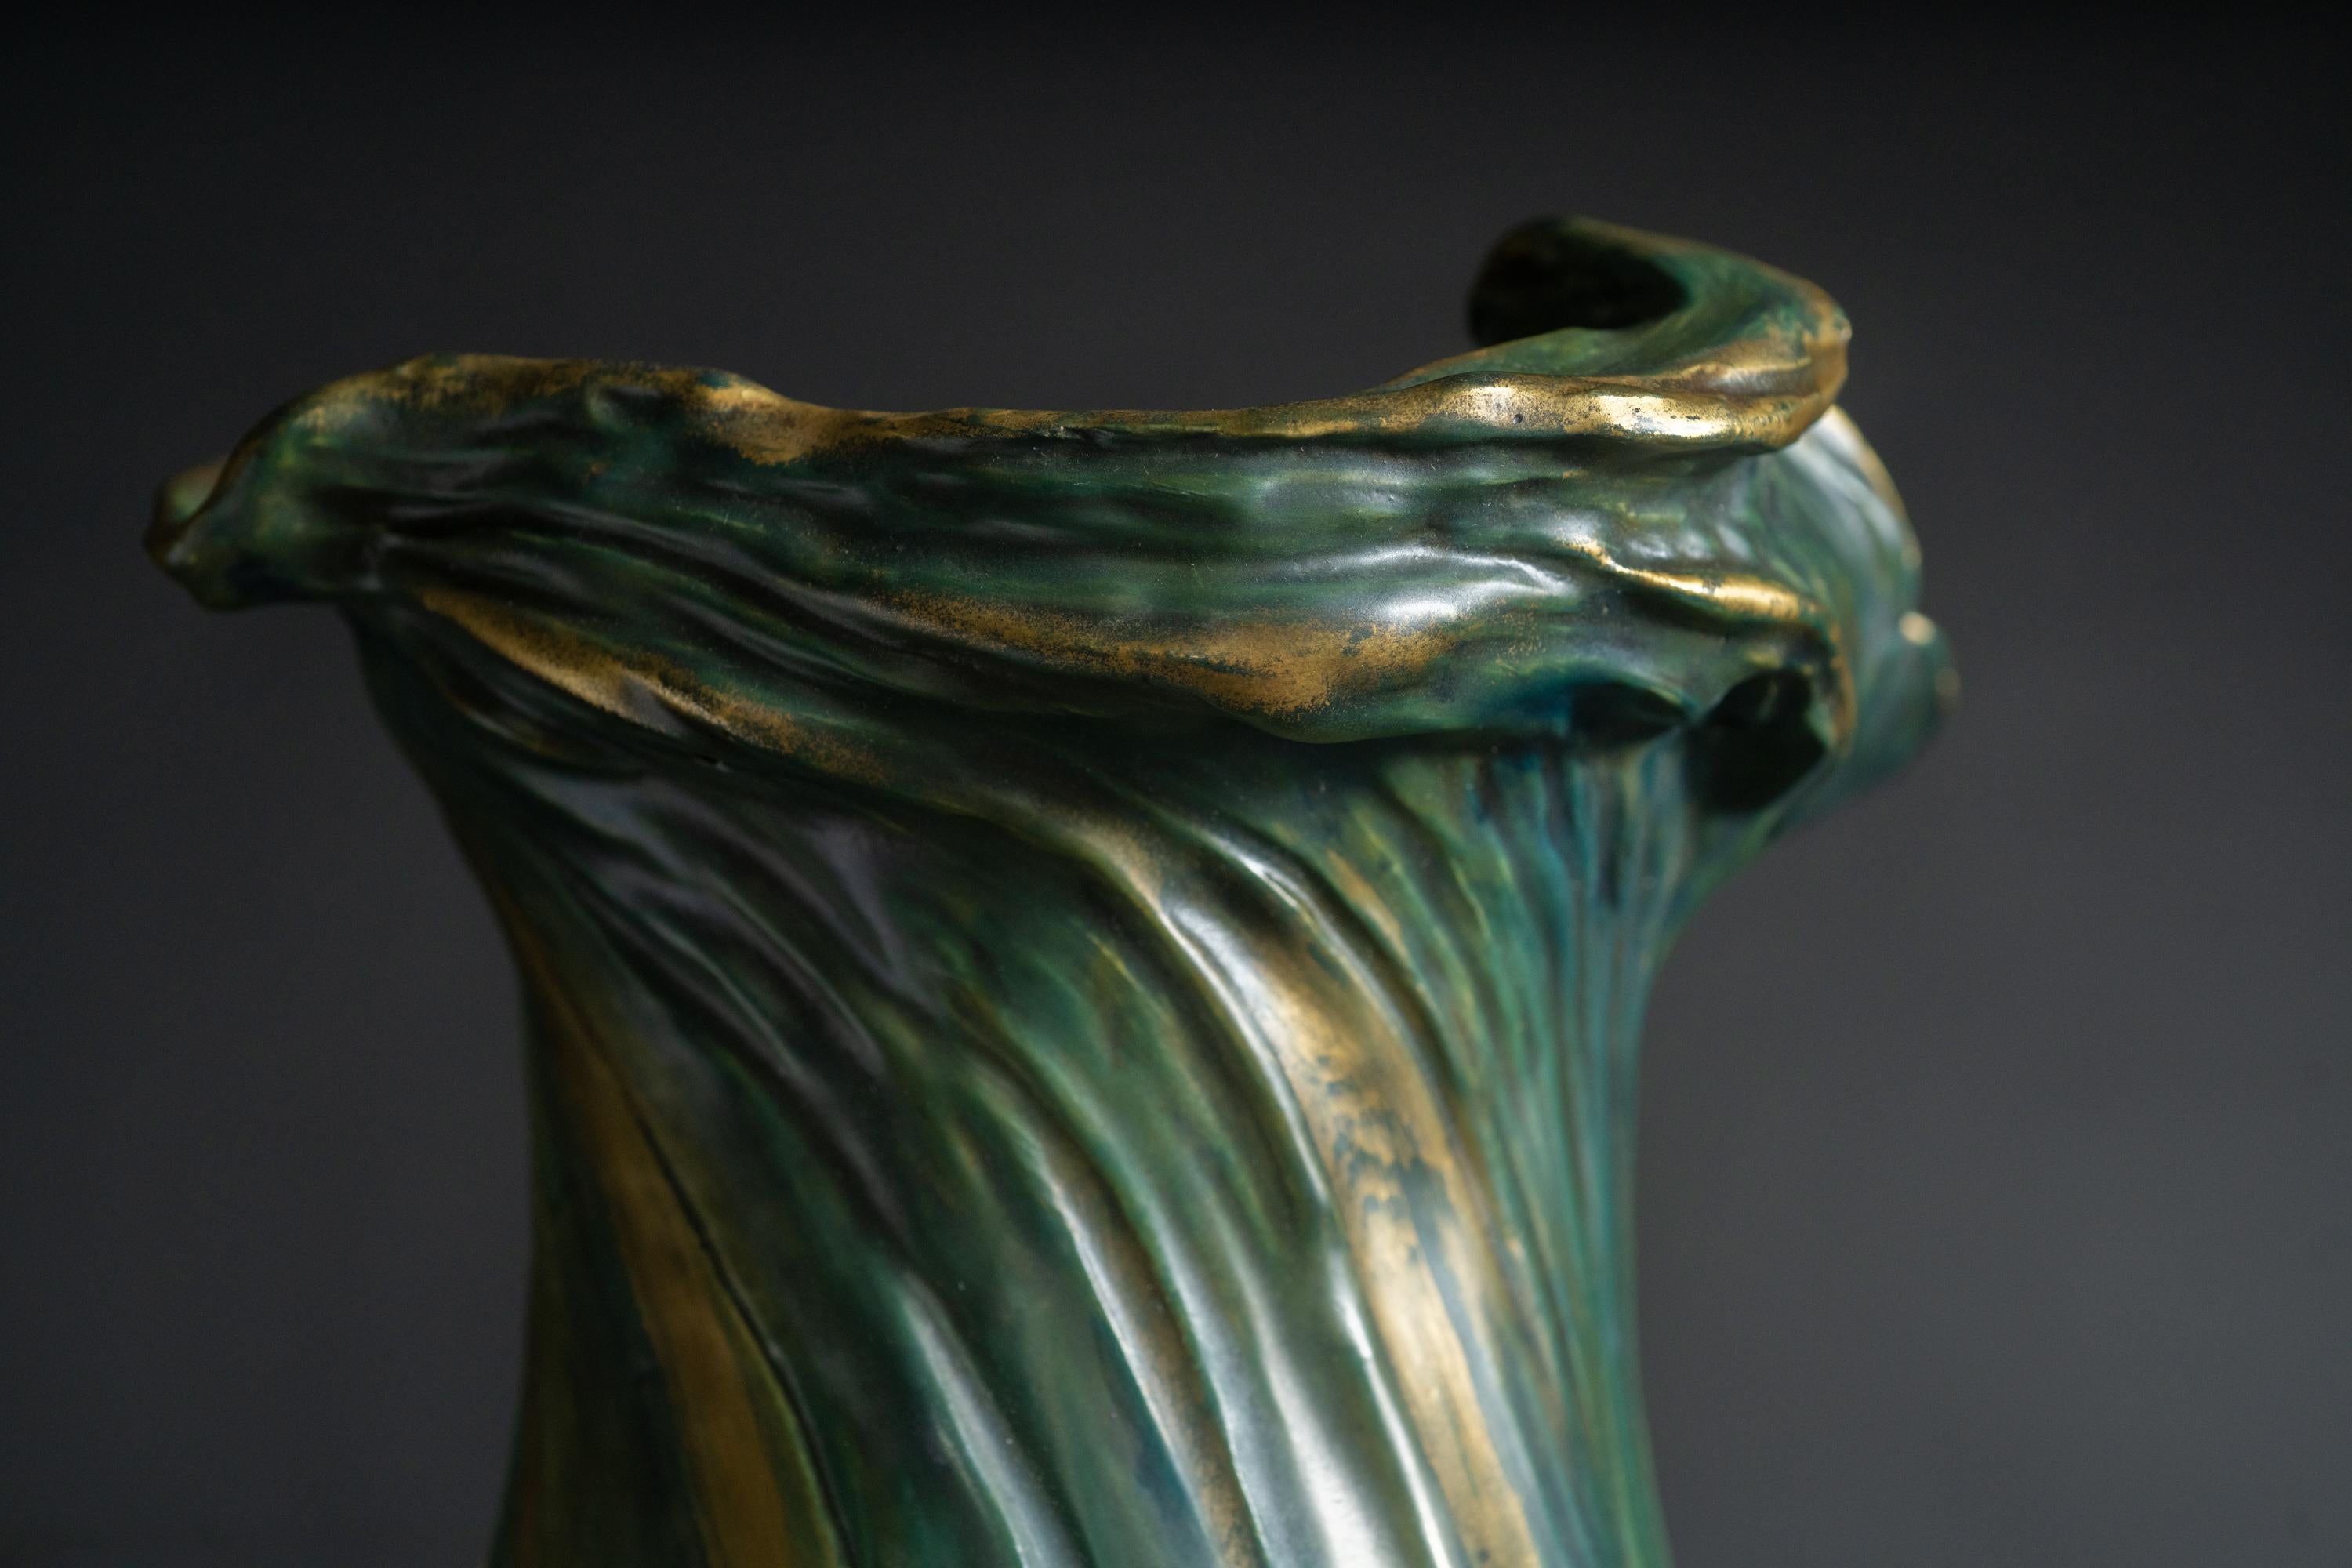 Monumental Amphora Art Nouveau Vase w/Saurian by Eduard Stellmacher & Co. For Sale 3